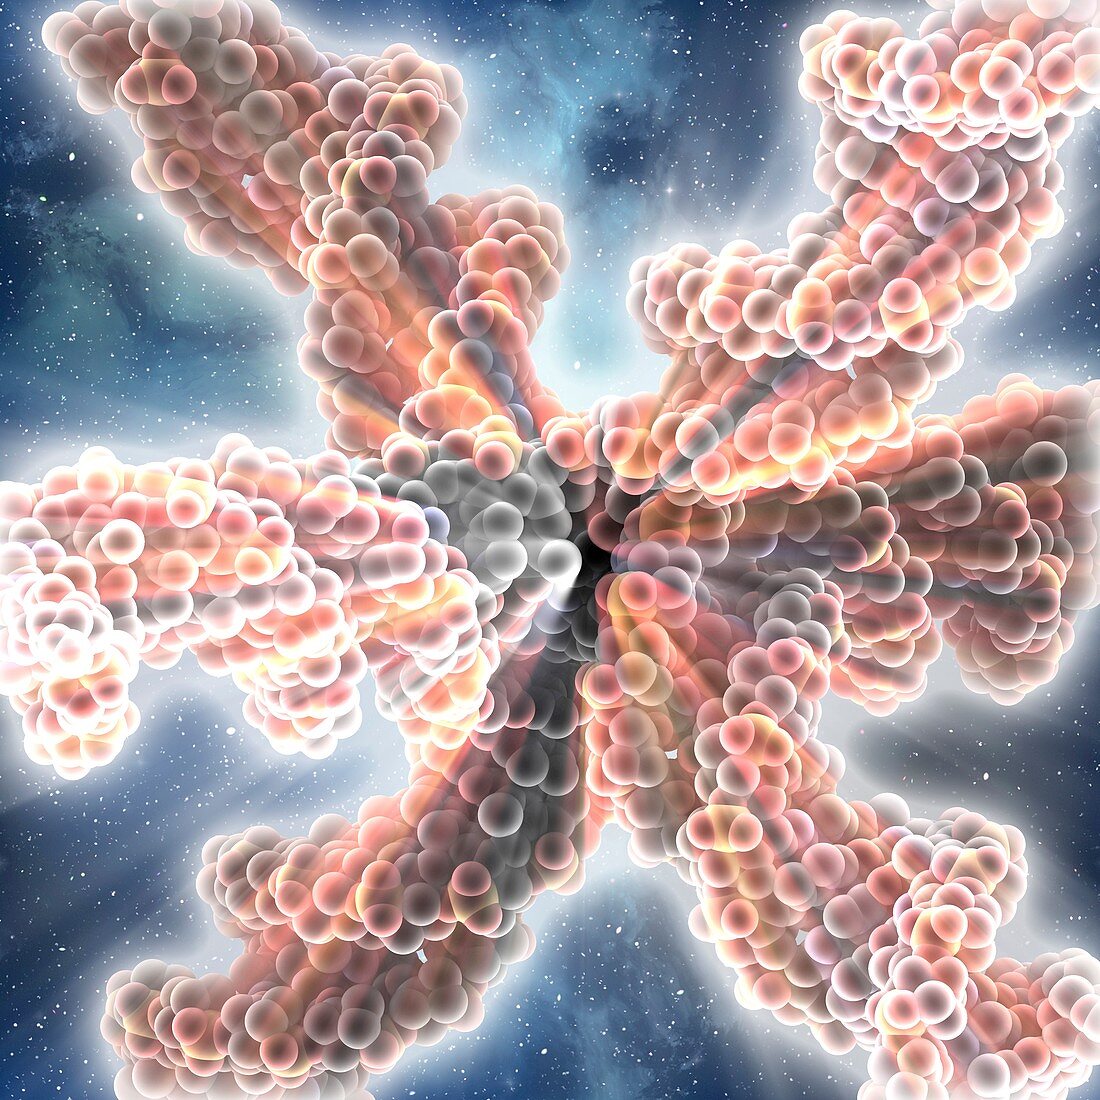 DNA 6-way junction,artwork